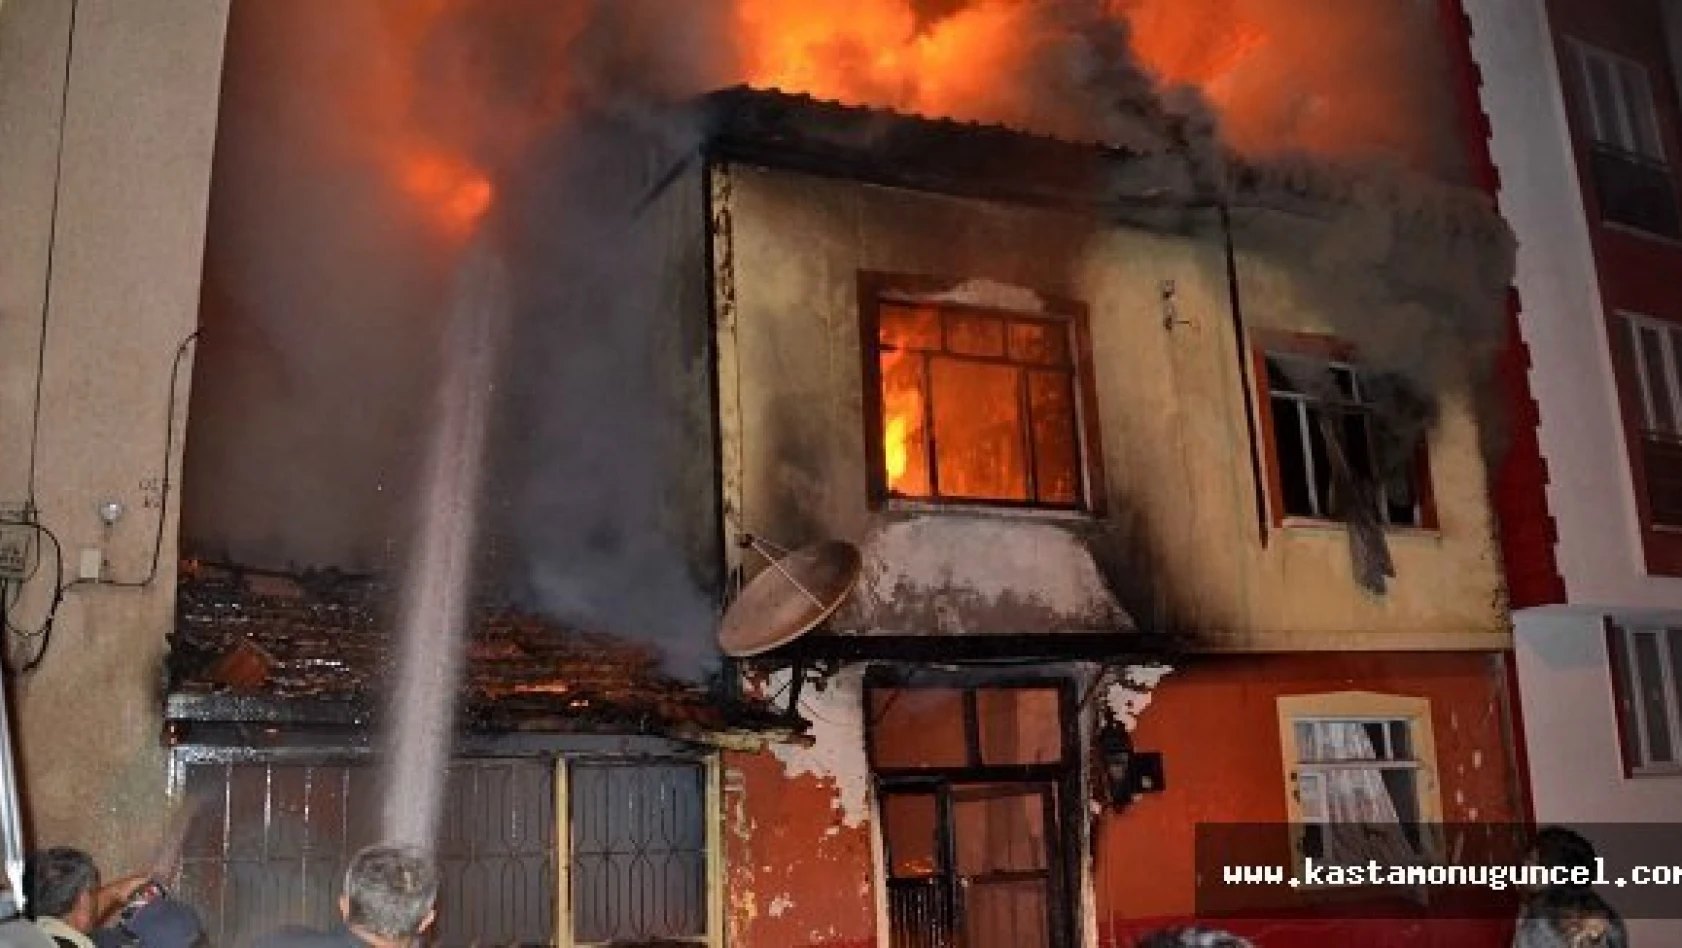 Kastamonu'da Yangın: 2 Ölü